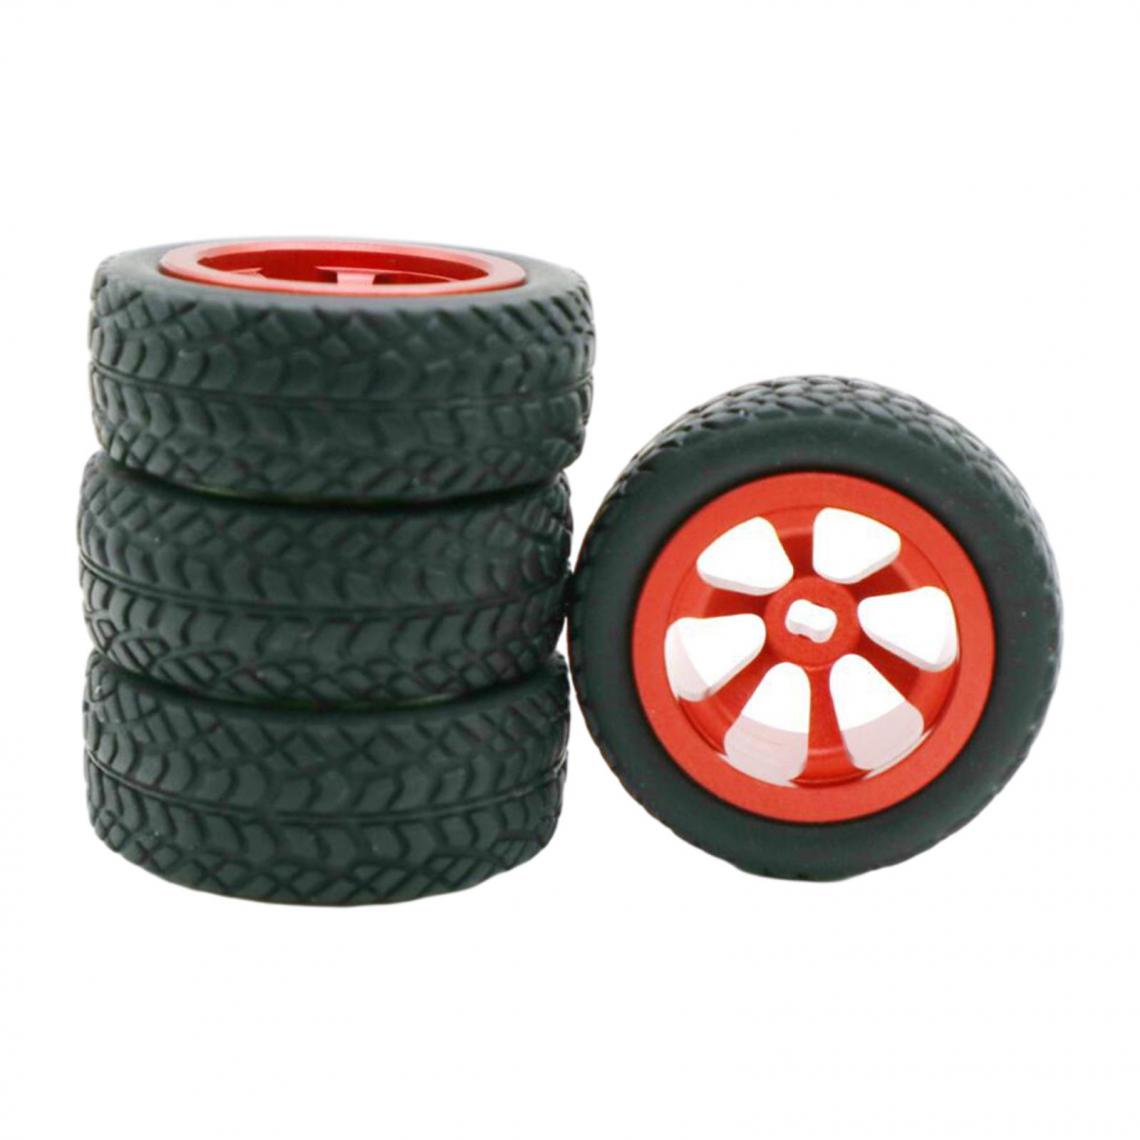 marque generique - Les pneus en caoutchouc - Accessoires et pièces